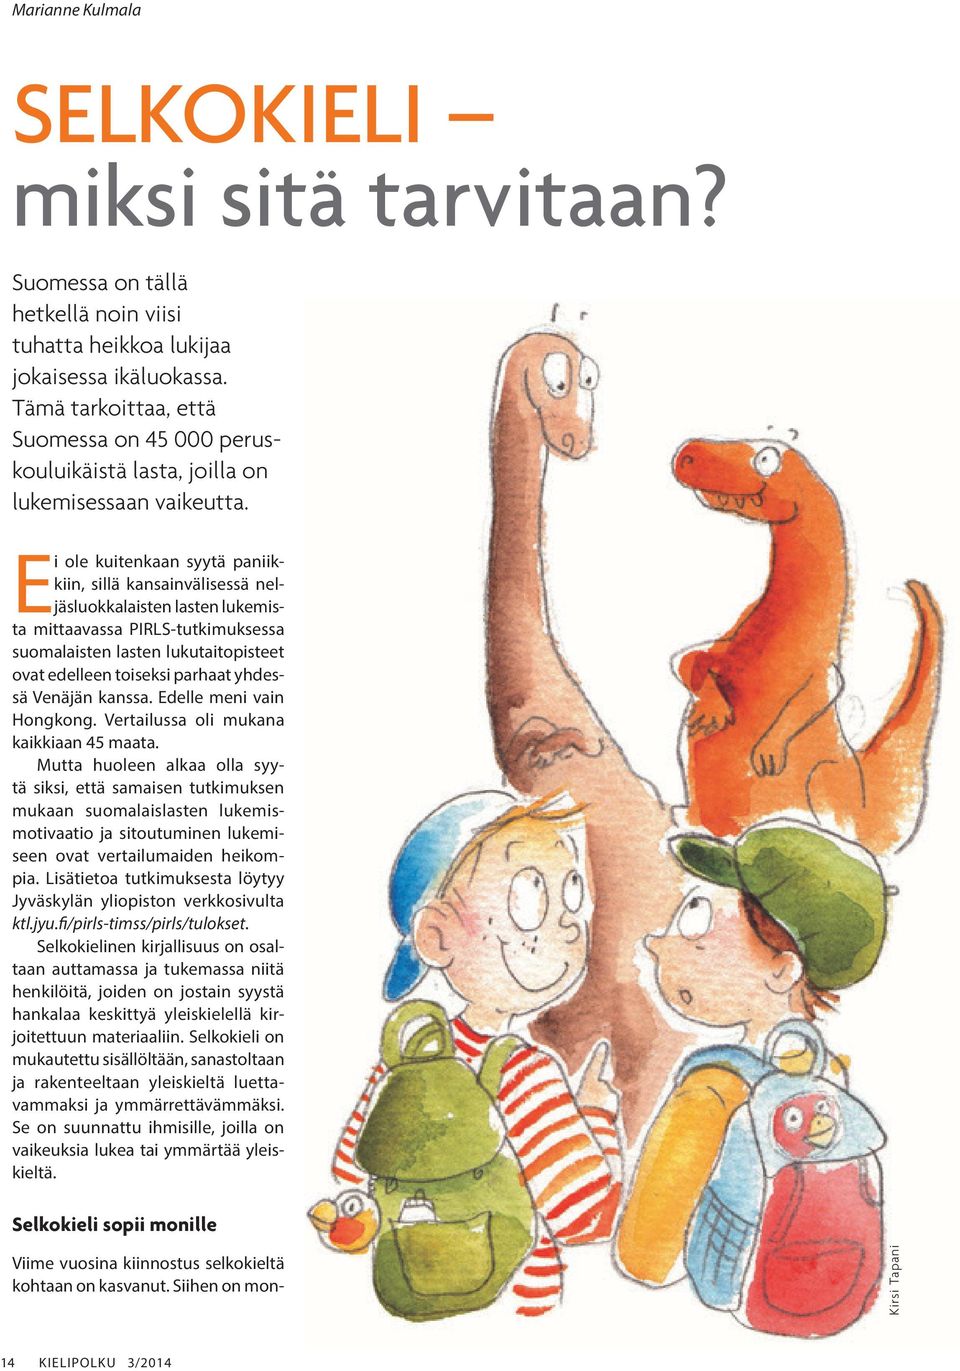 Ei ole kuitenkaan syytä paniikkiin, sillä kansainvälisessä neljäsluokkalaisten lasten lukemista mittaavassa PIRLS-tutkimuksessa suomalaisten lasten lukutaitopisteet ovat edelleen toiseksi parhaat